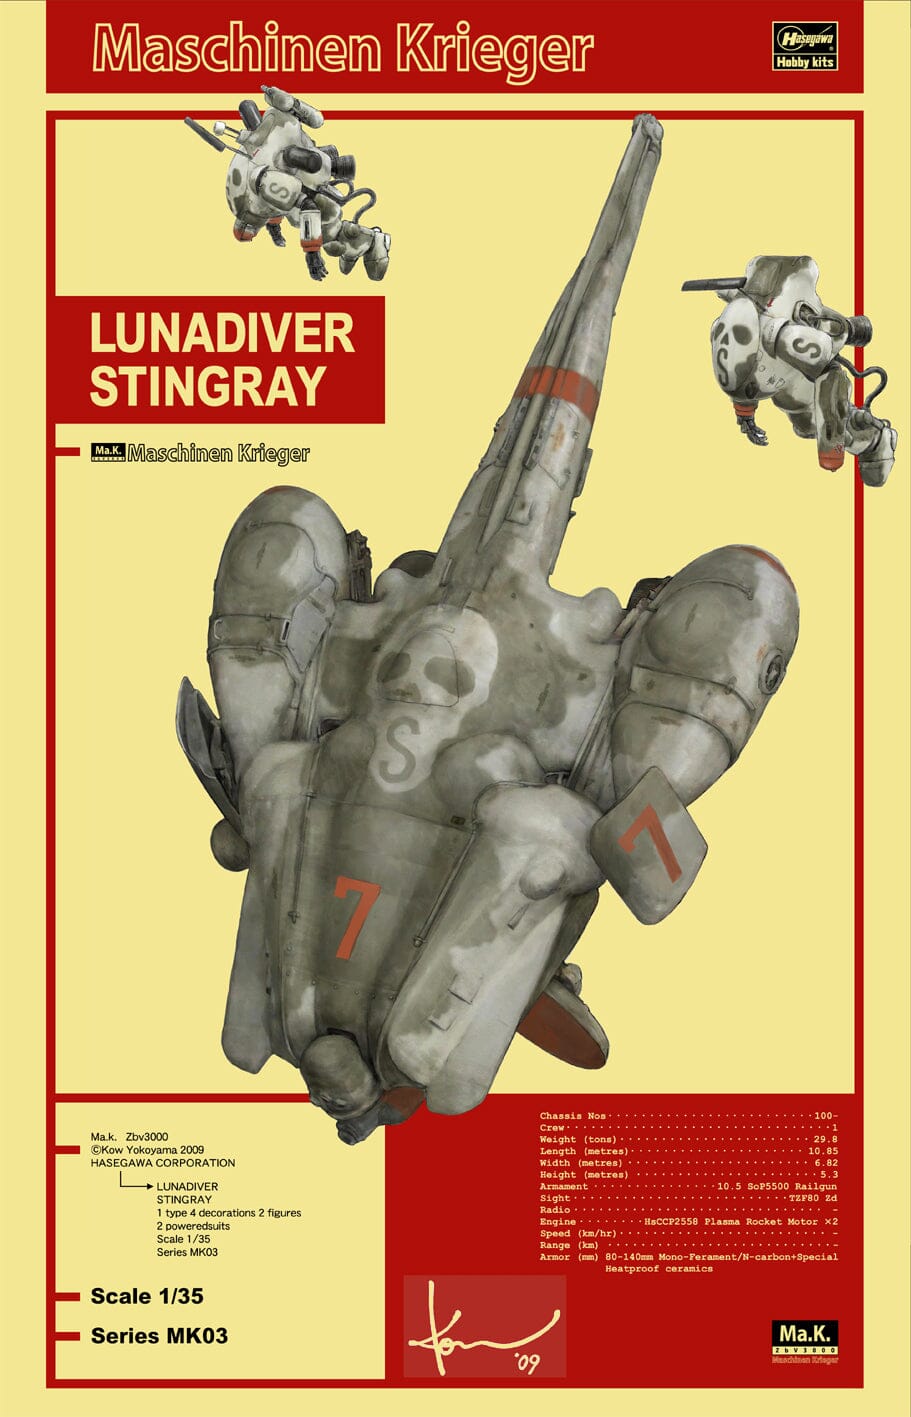 Maschinen Krieger MK03 1/35 Lunadiver Stingray Model Kit – USA 